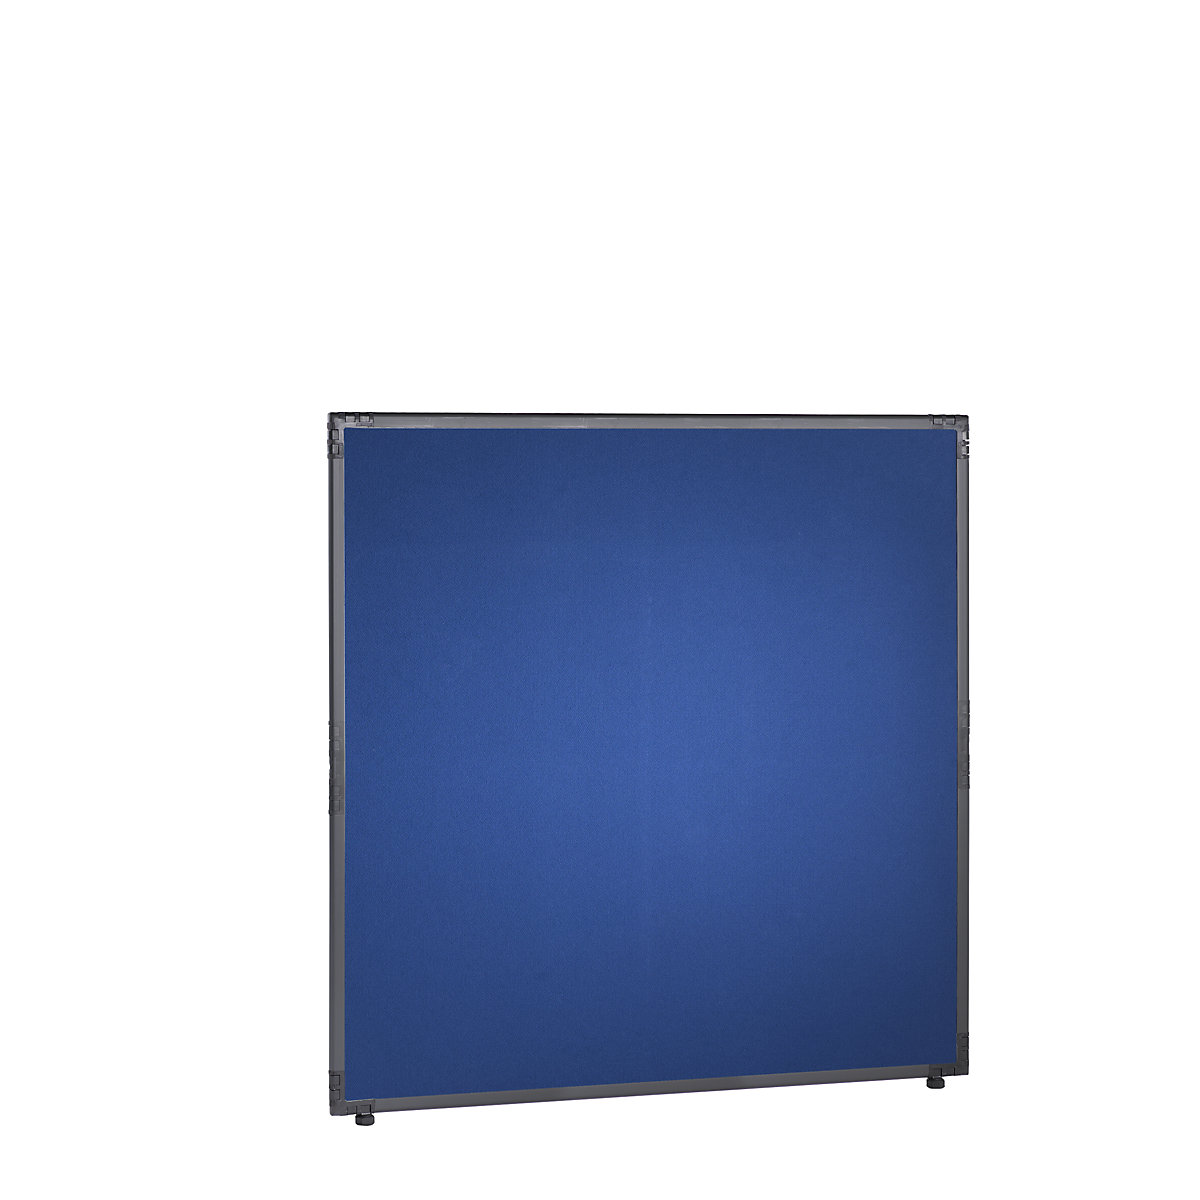 Scheidingswand, vilt, frame leigrijs, blauw, h x b = 1300 x 1300 mm-15